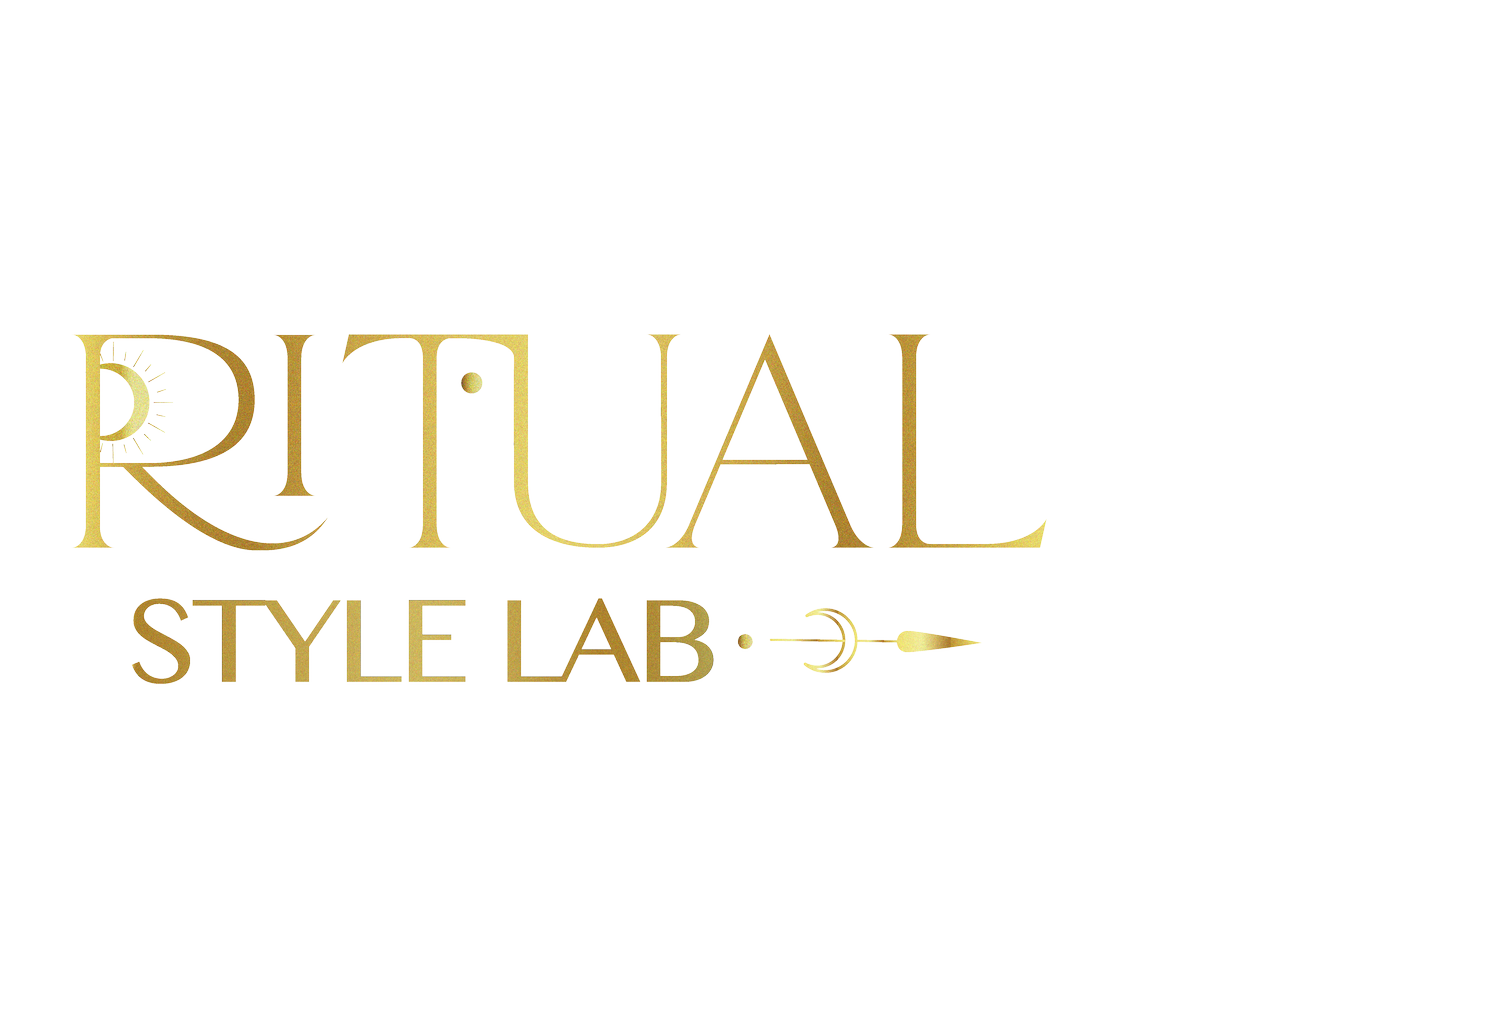 Ritual Style Lab